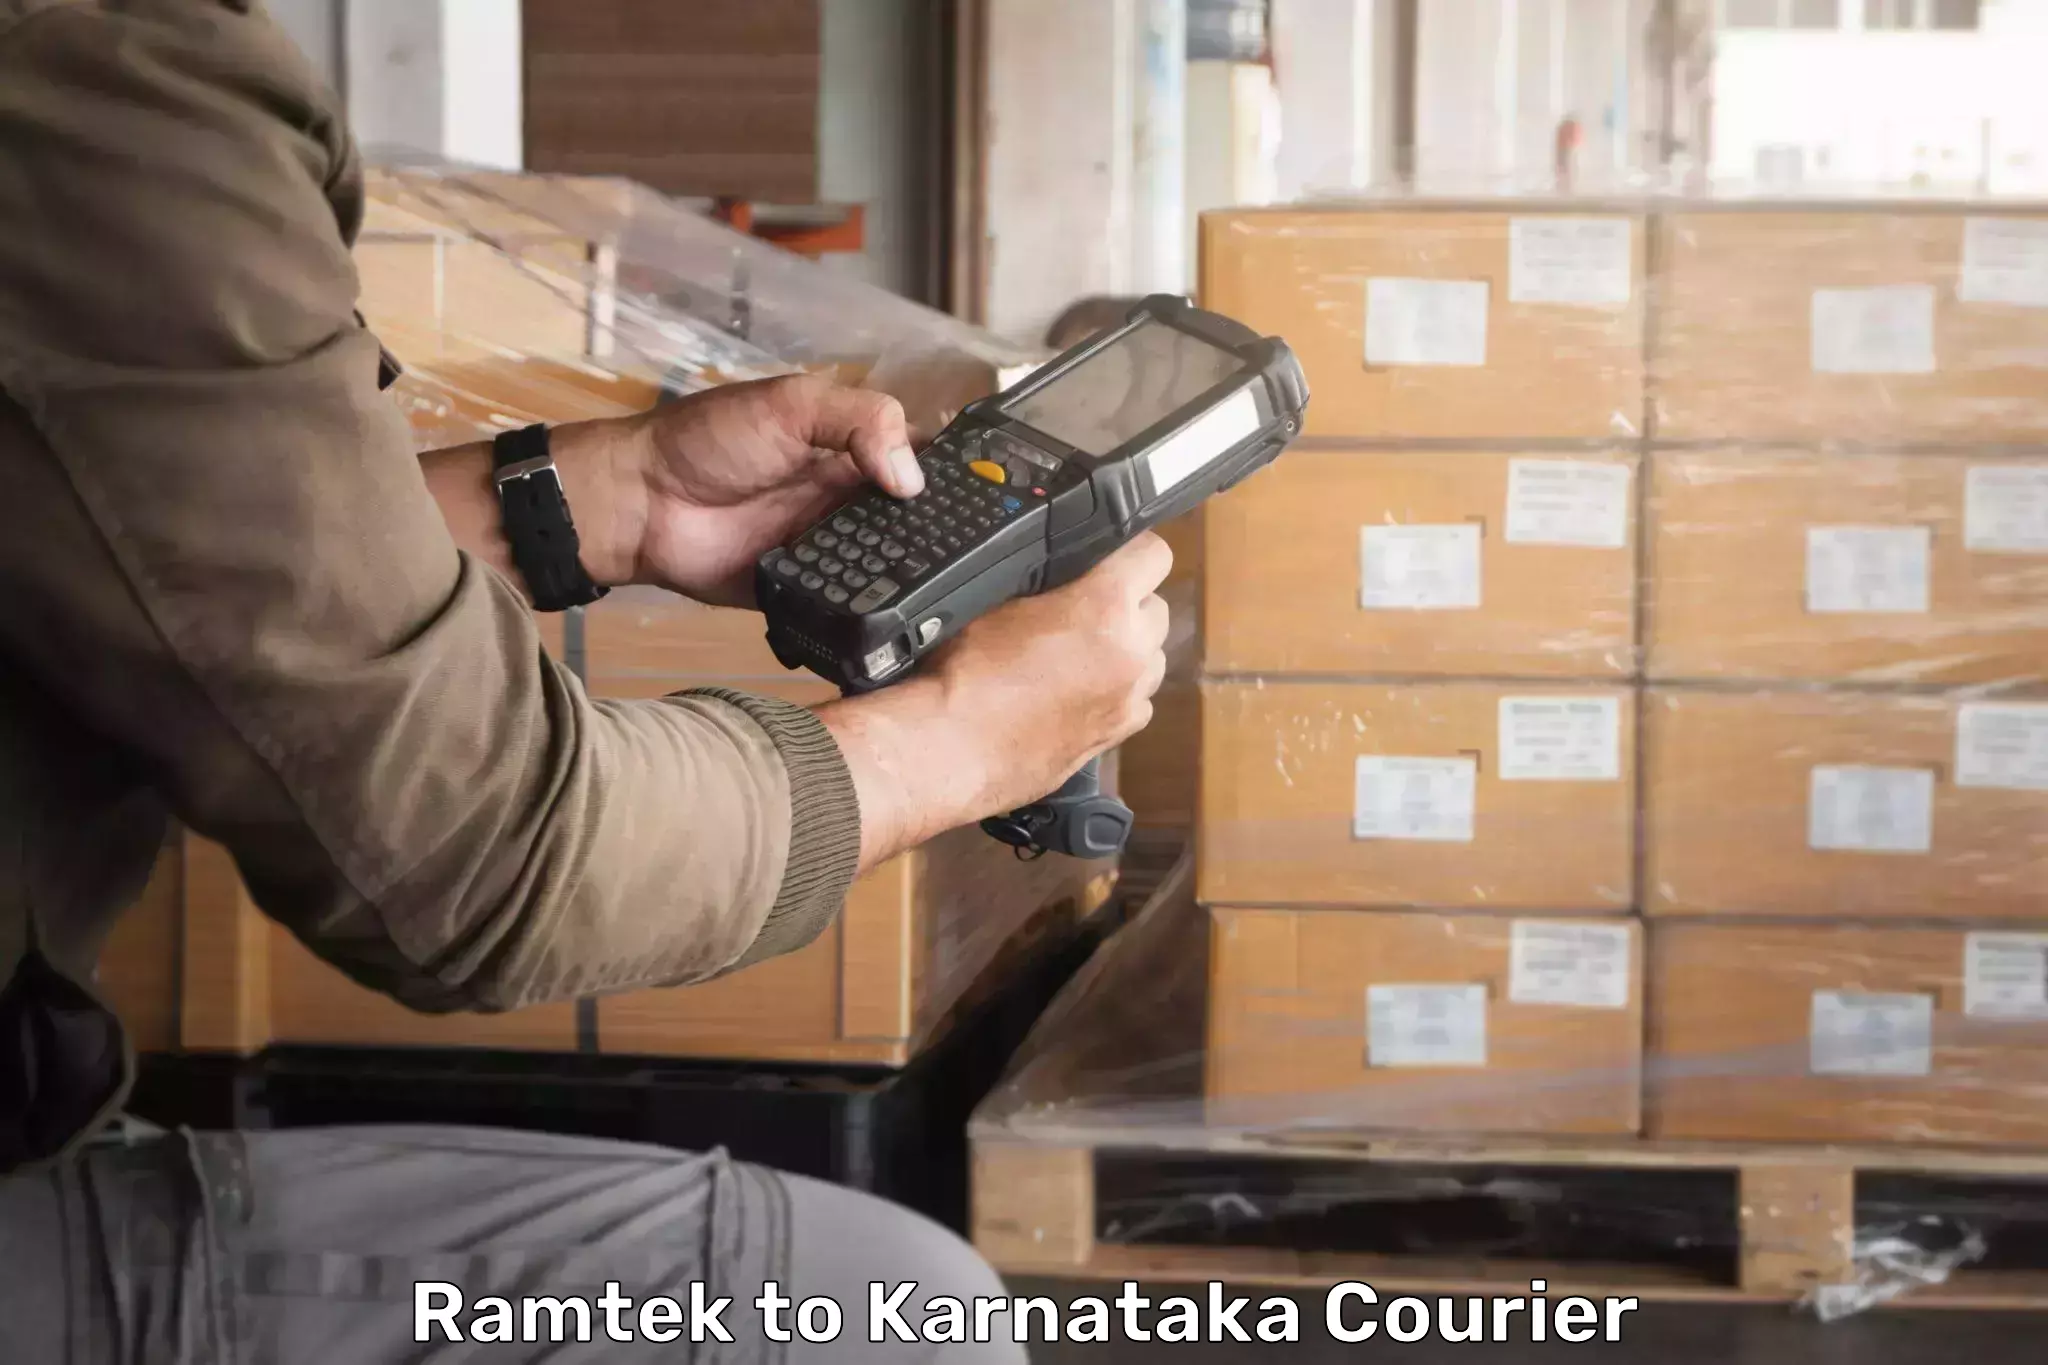 Quality courier services Ramtek to Lingasugur